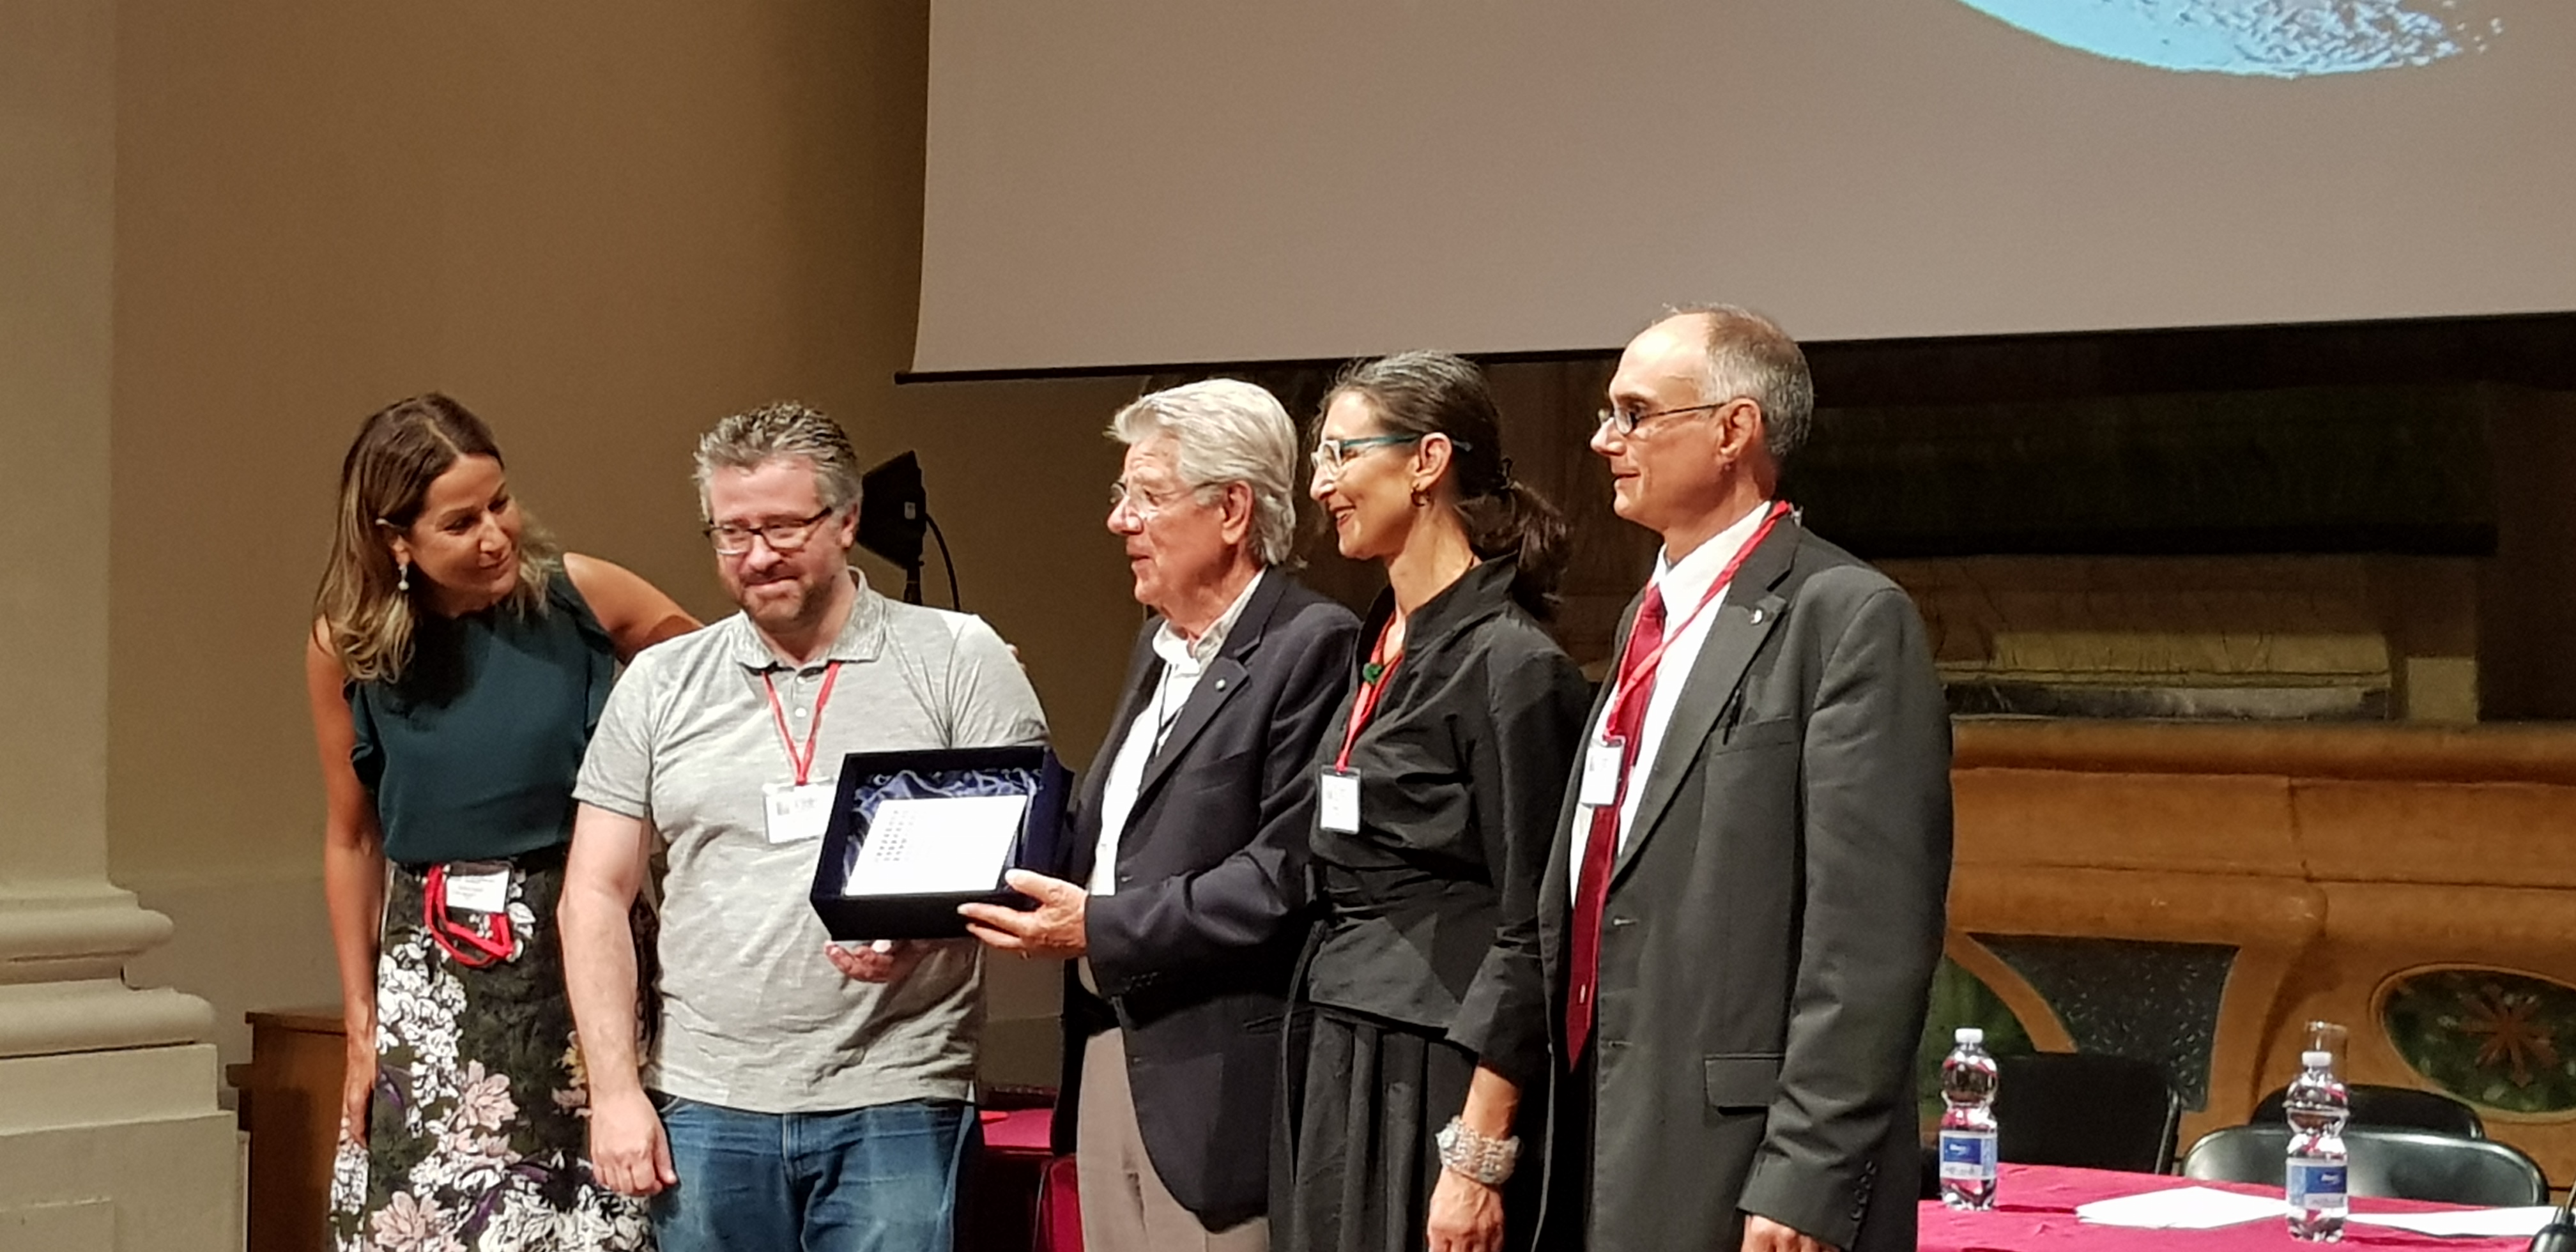 Adolfo Guzzini, Presidente Emerito di iGuzzini riceve il Premio Colore 2019 